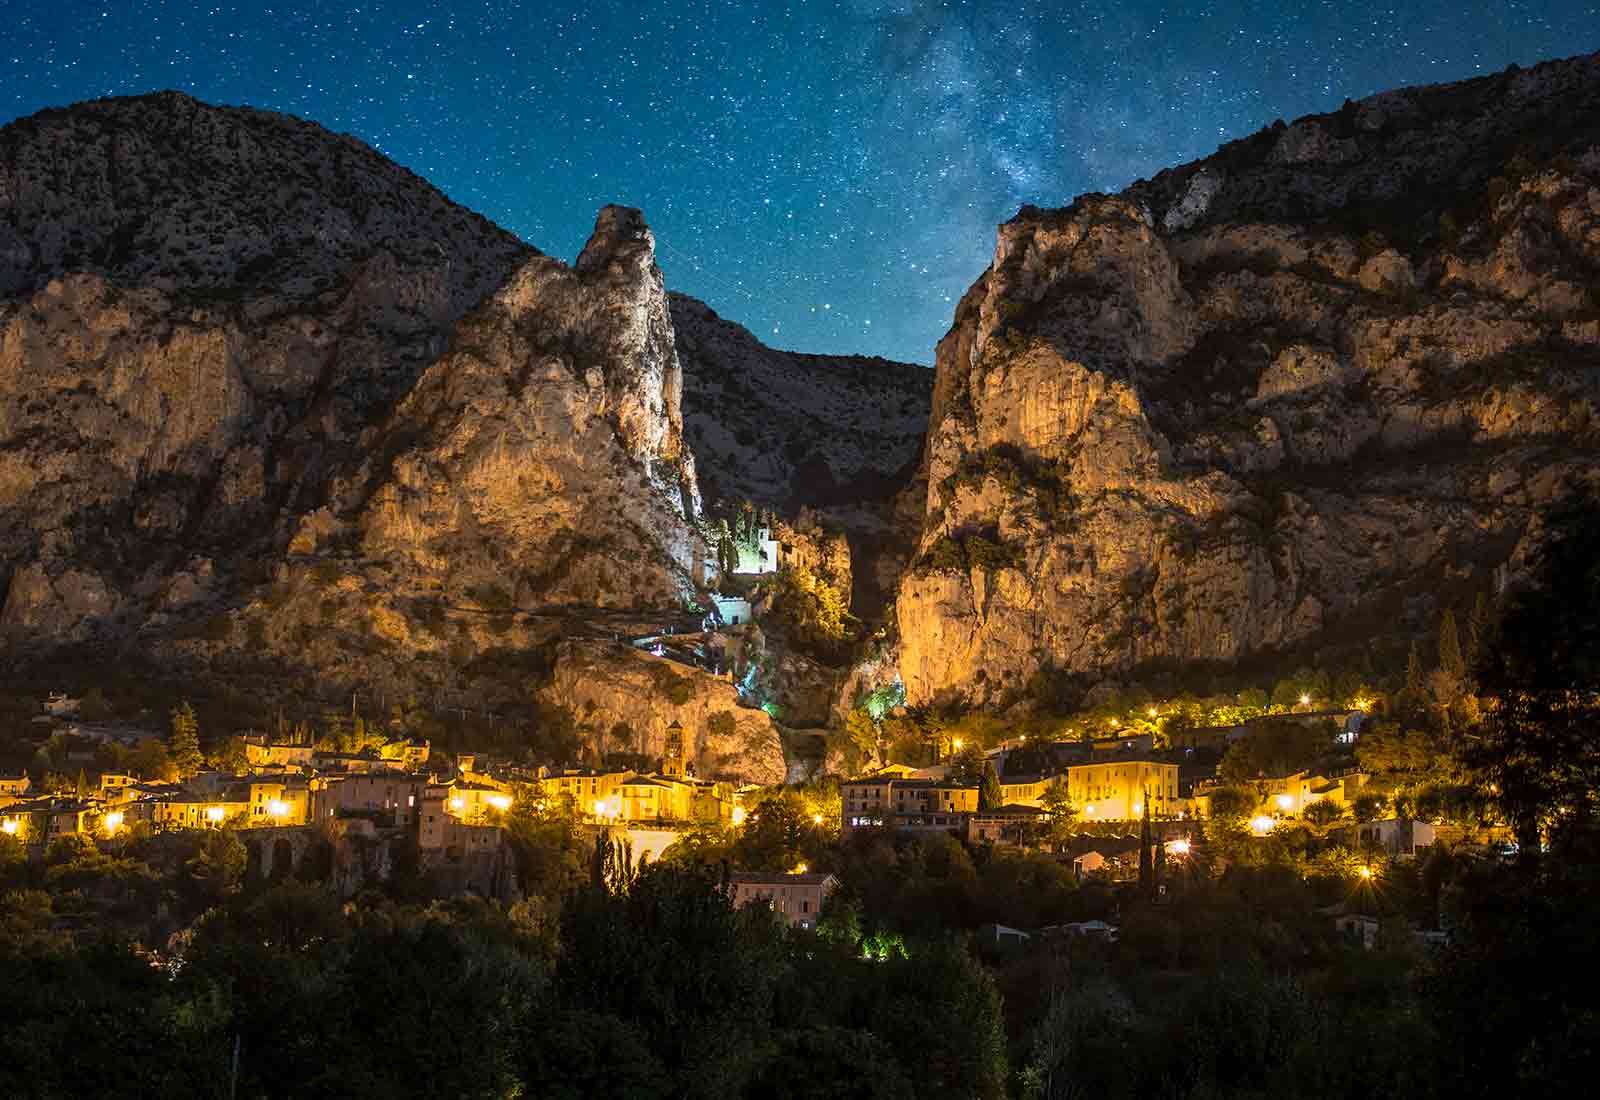 Vue nocturne de Moustiers Sainte-Marie, avec les 2 rochers